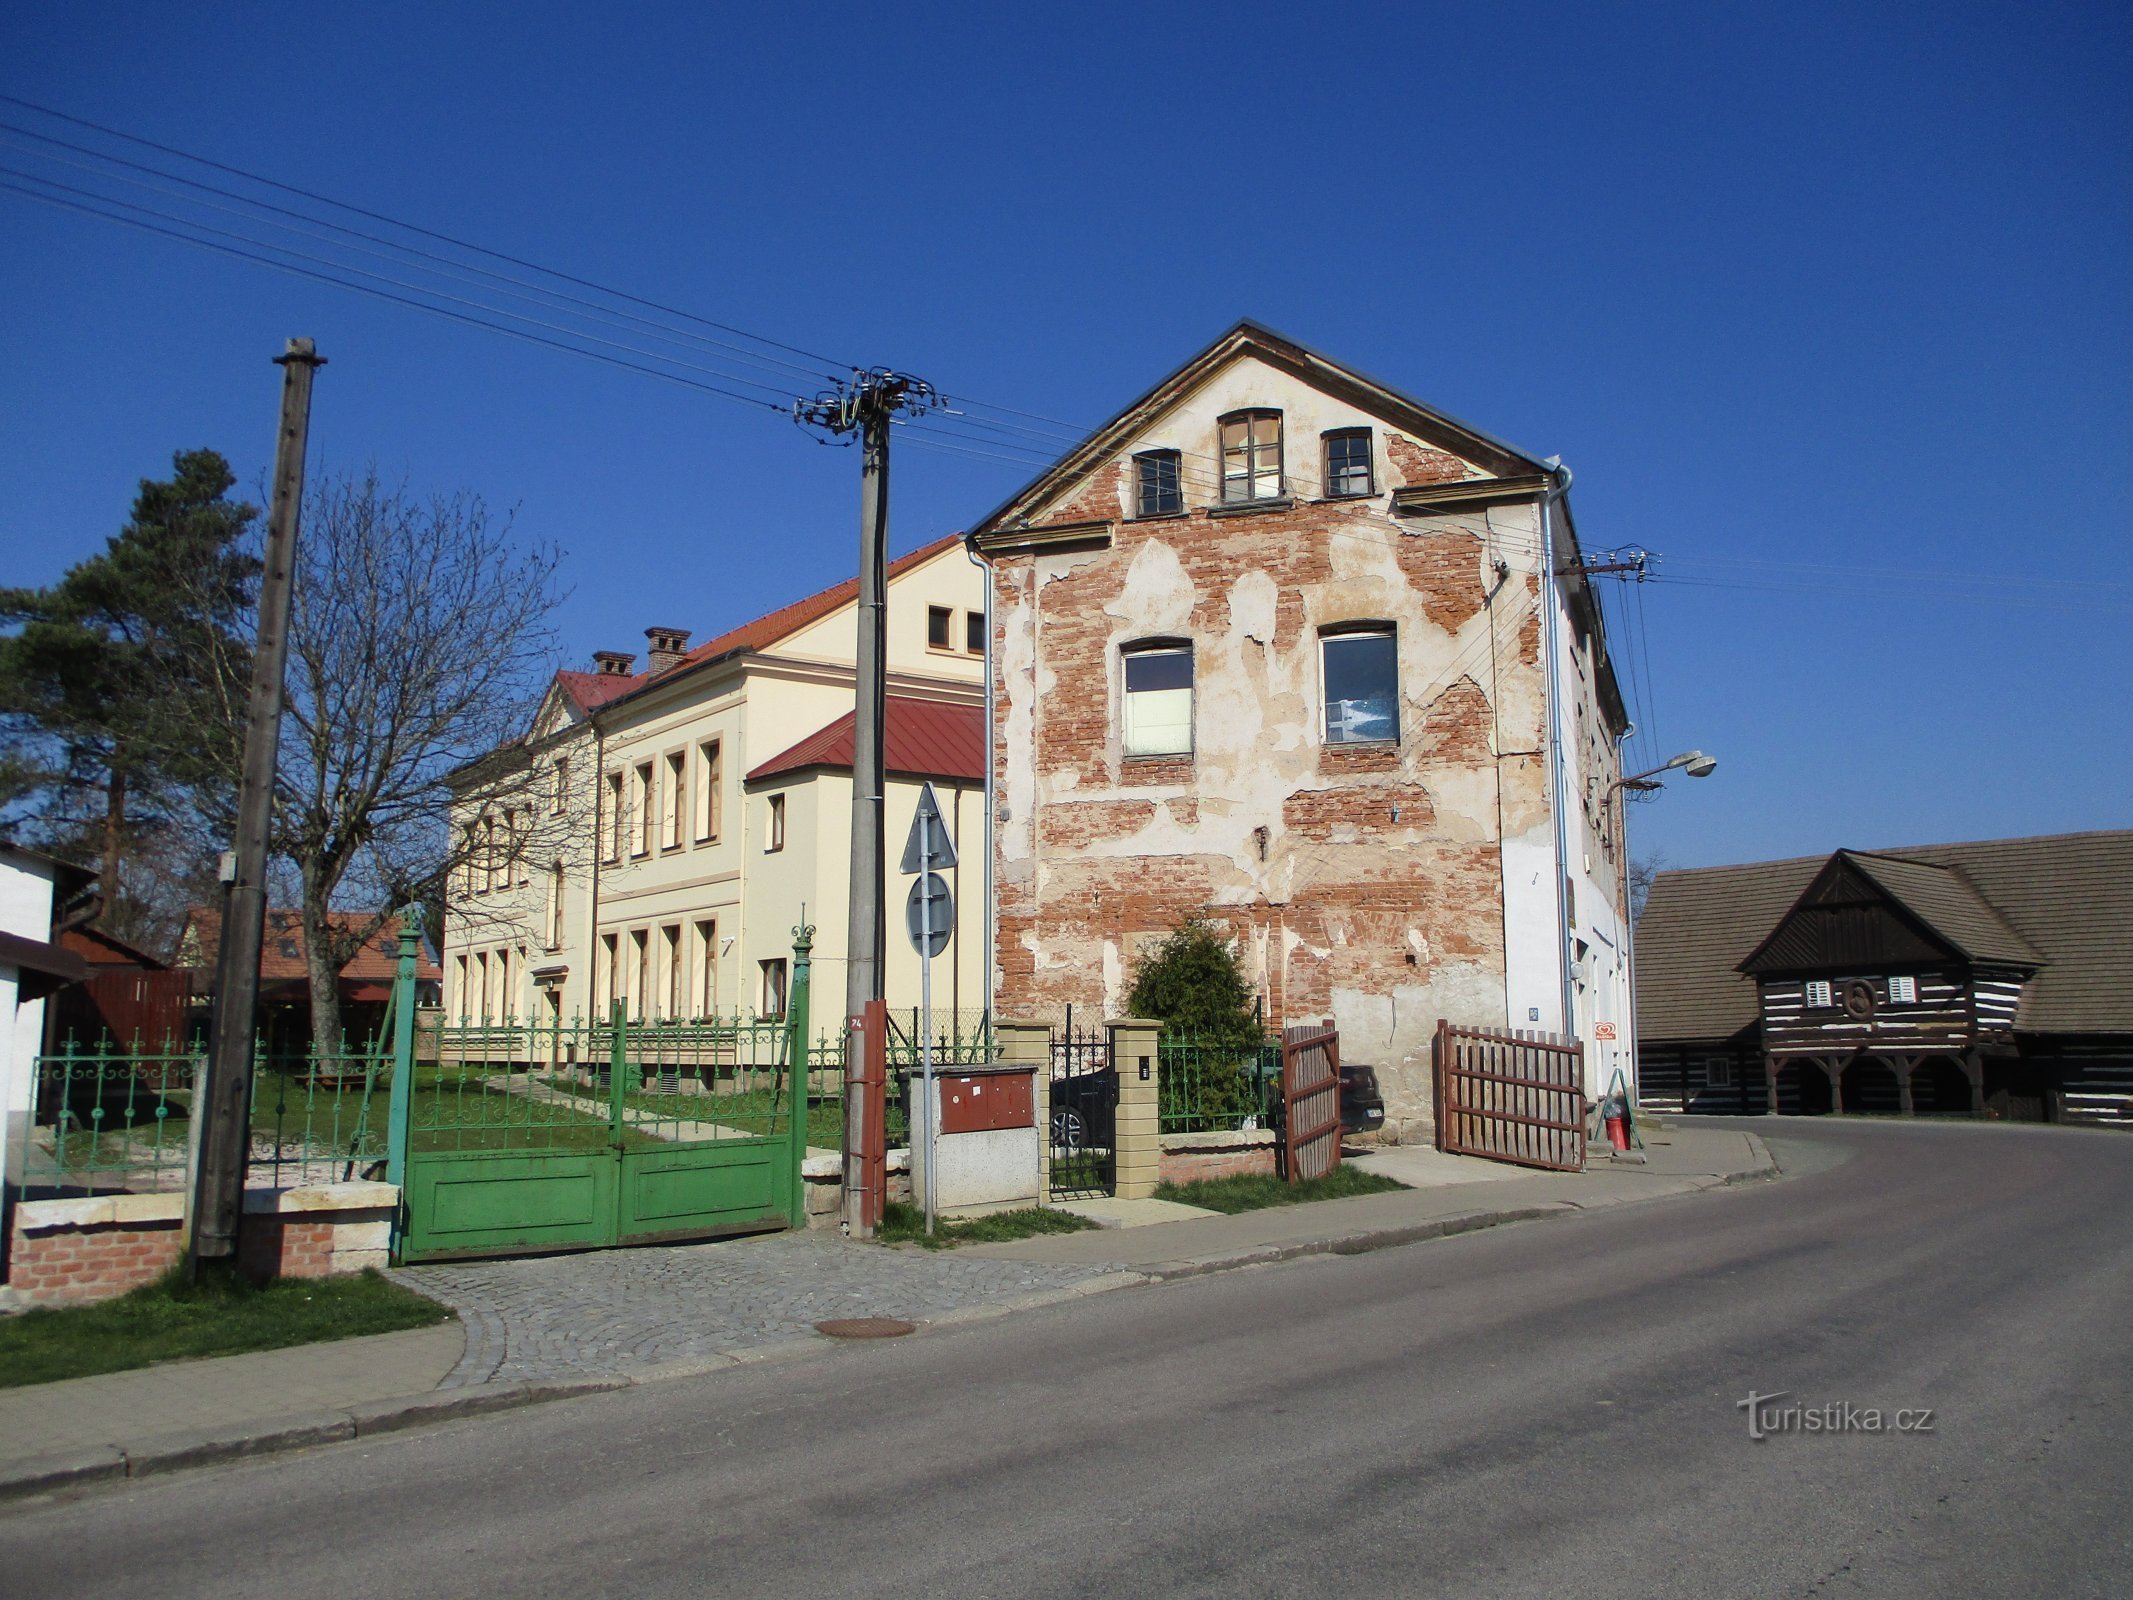 Škola br. 4 i kuća br. 5 (Hoříněves, 2.4.2020. travnja XNUMX.)